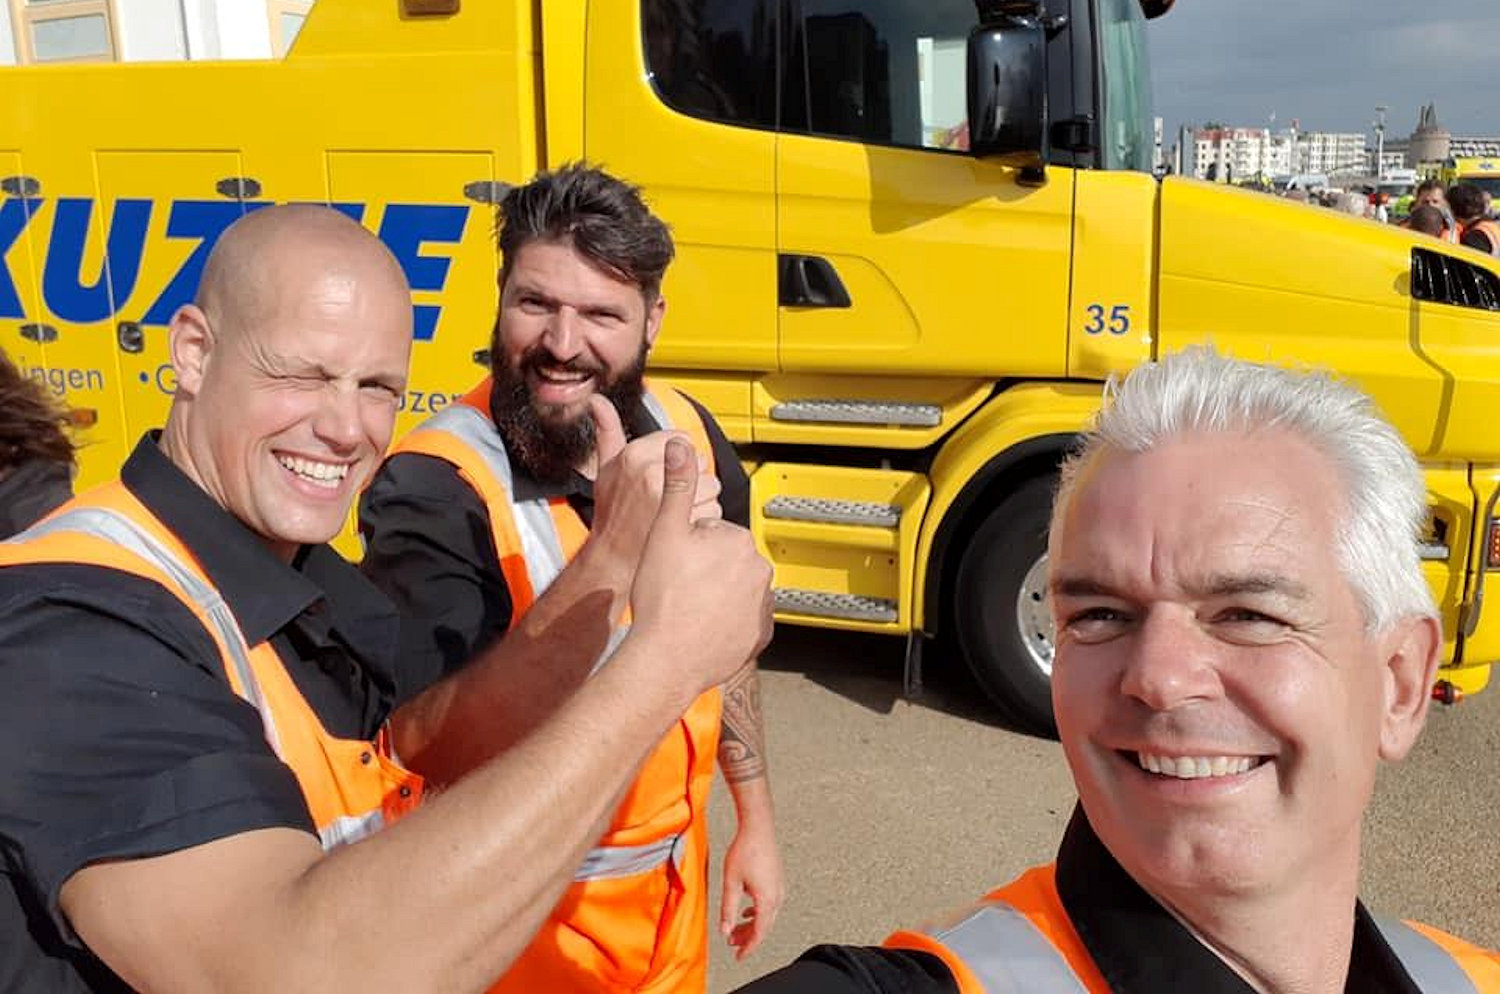 Yoran van der Haar, Mark Ravestein and Mark Kuzee, all from Auto Kuzee, on the promenade in Flushing on 15 August 2018